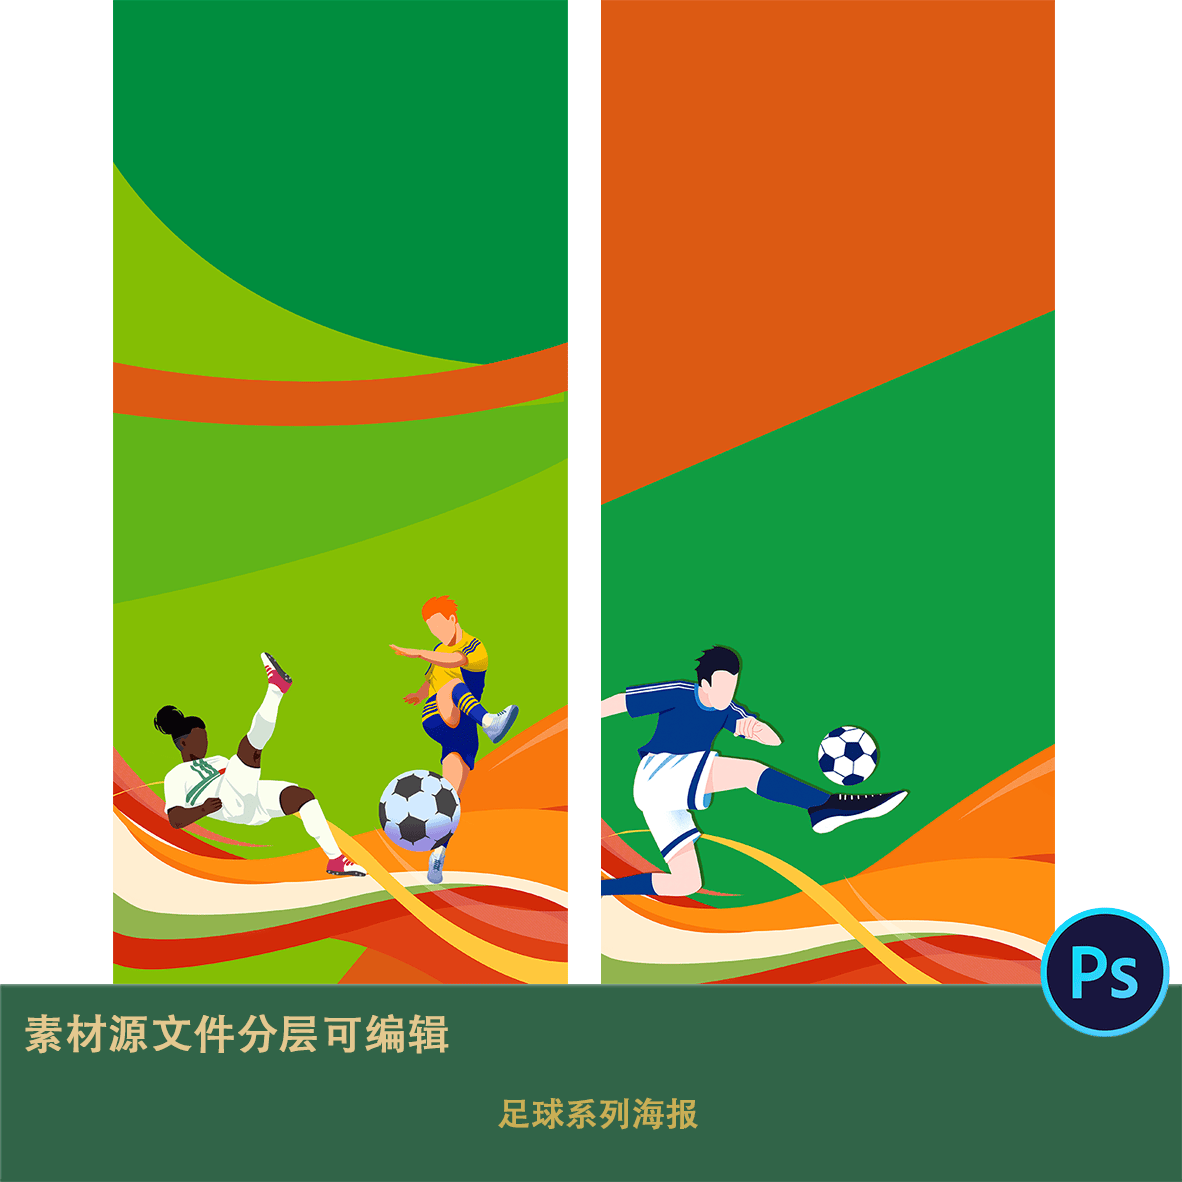 2.5D等距踢足球动作比赛足球场运动装备插画场景图片ai矢量素材